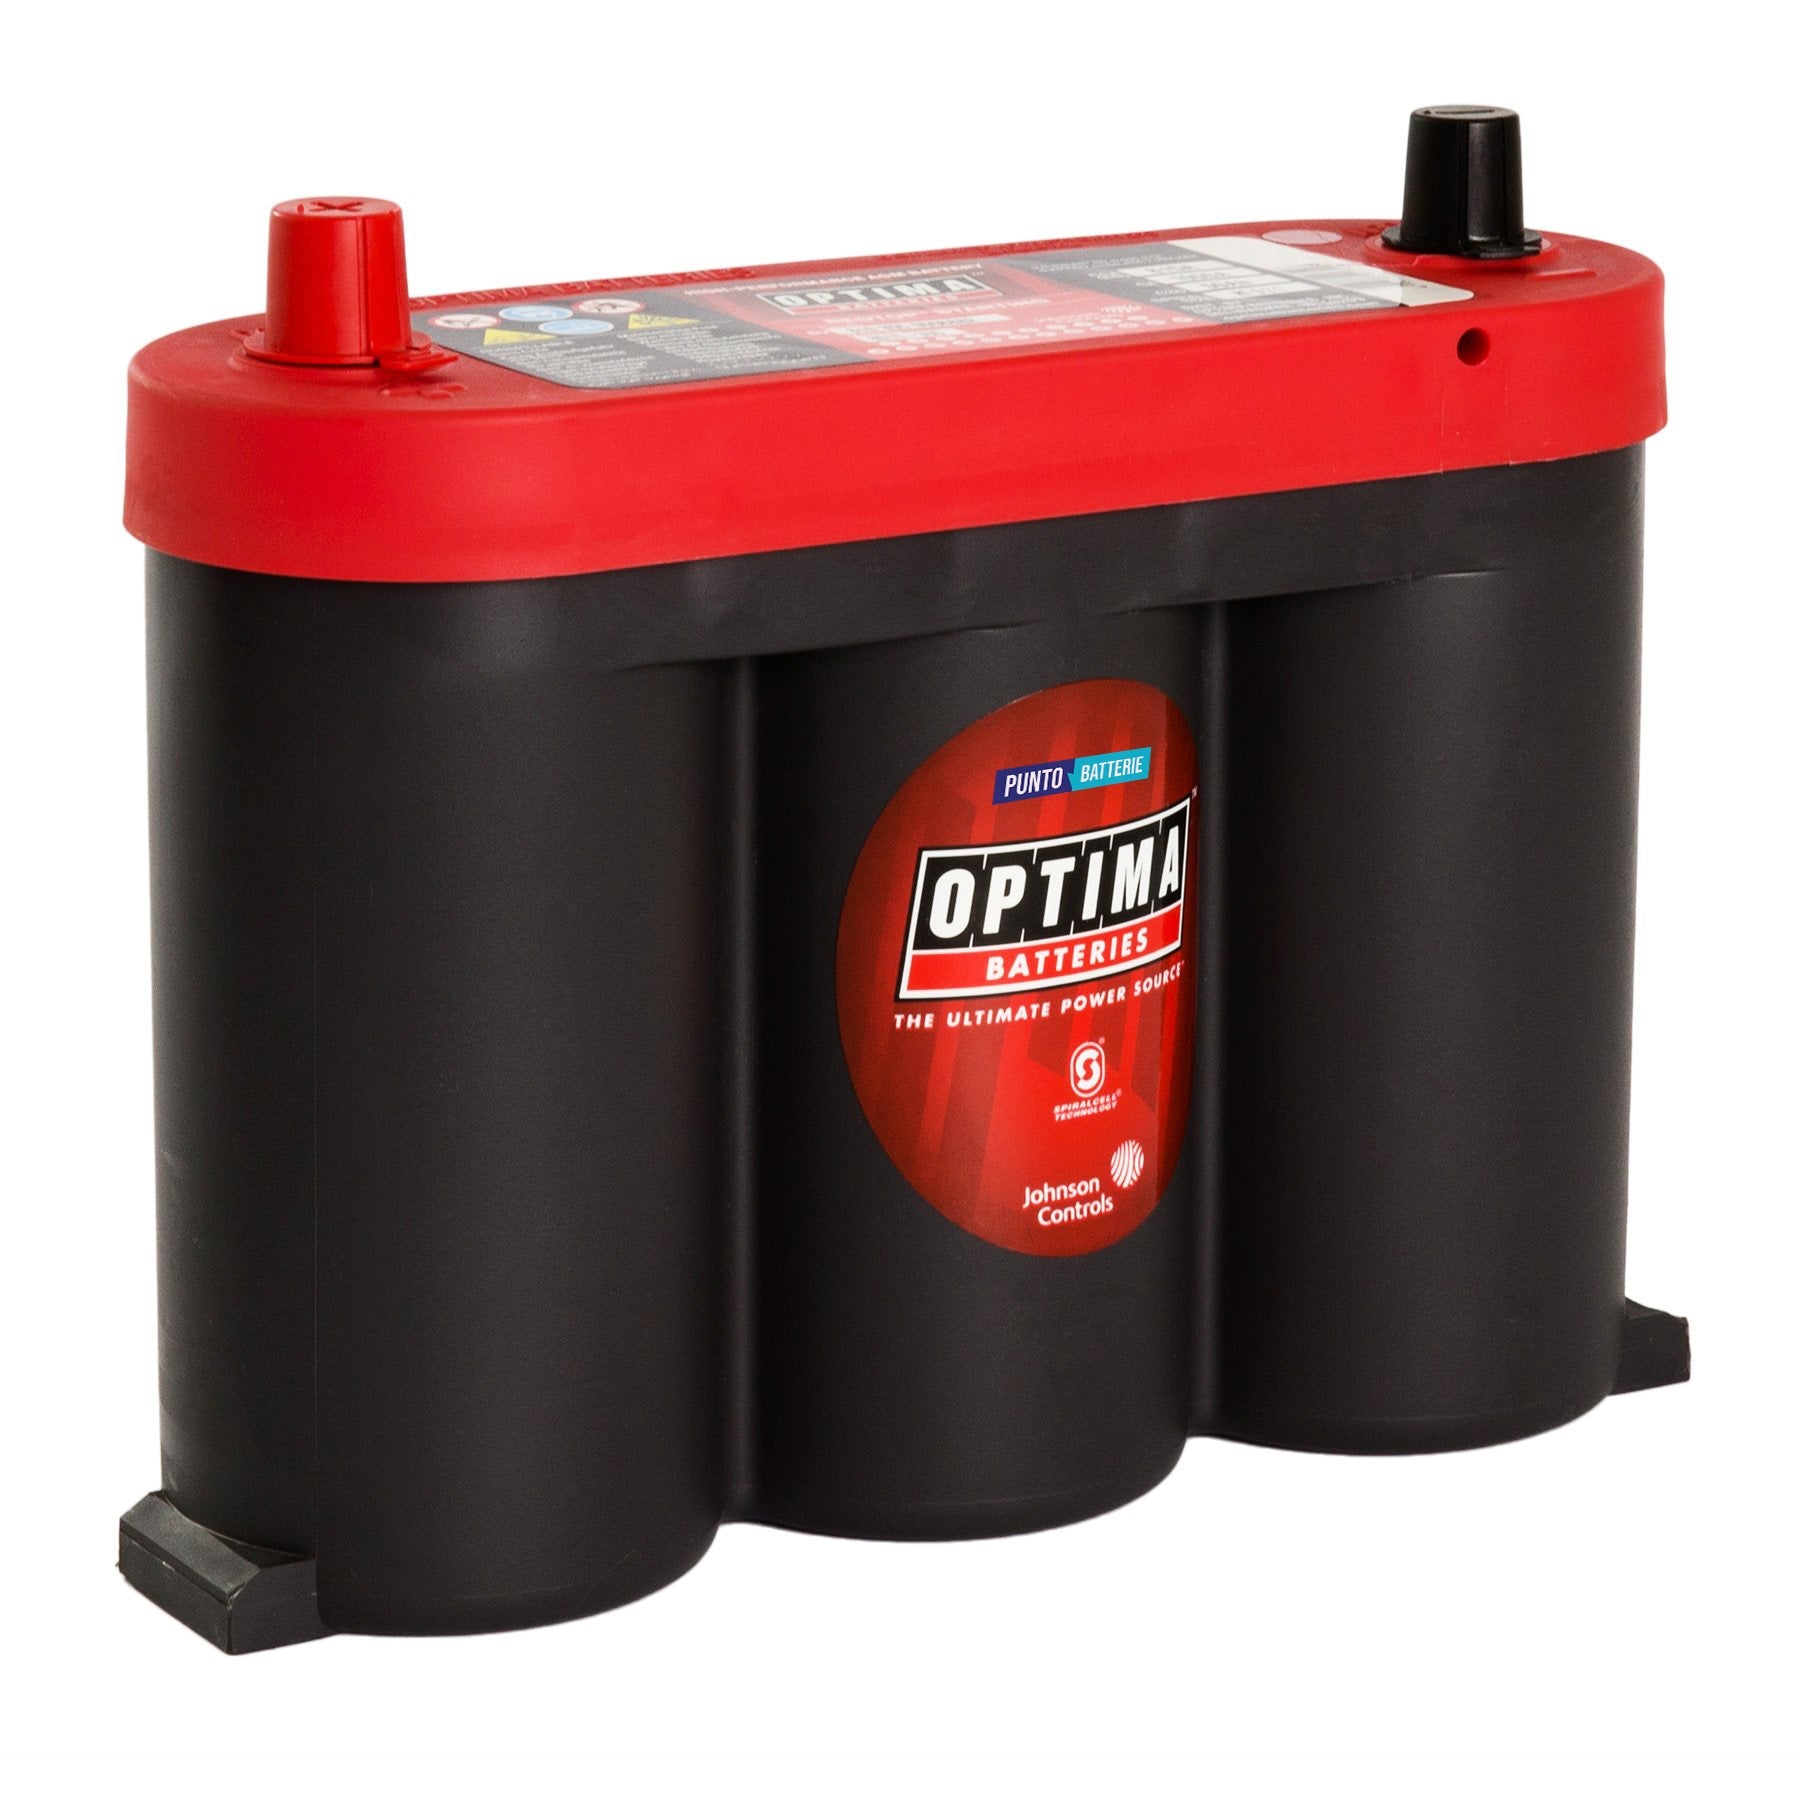 Batteria originale Optima Red Top RT S 2,1, dimensioni 252 x 90 x 206, polo positivo a sinistra, 6 volt, 50 amperora, 815 ampere, AGM. Batteria per veicoli e per l'alimentazione di servizi.